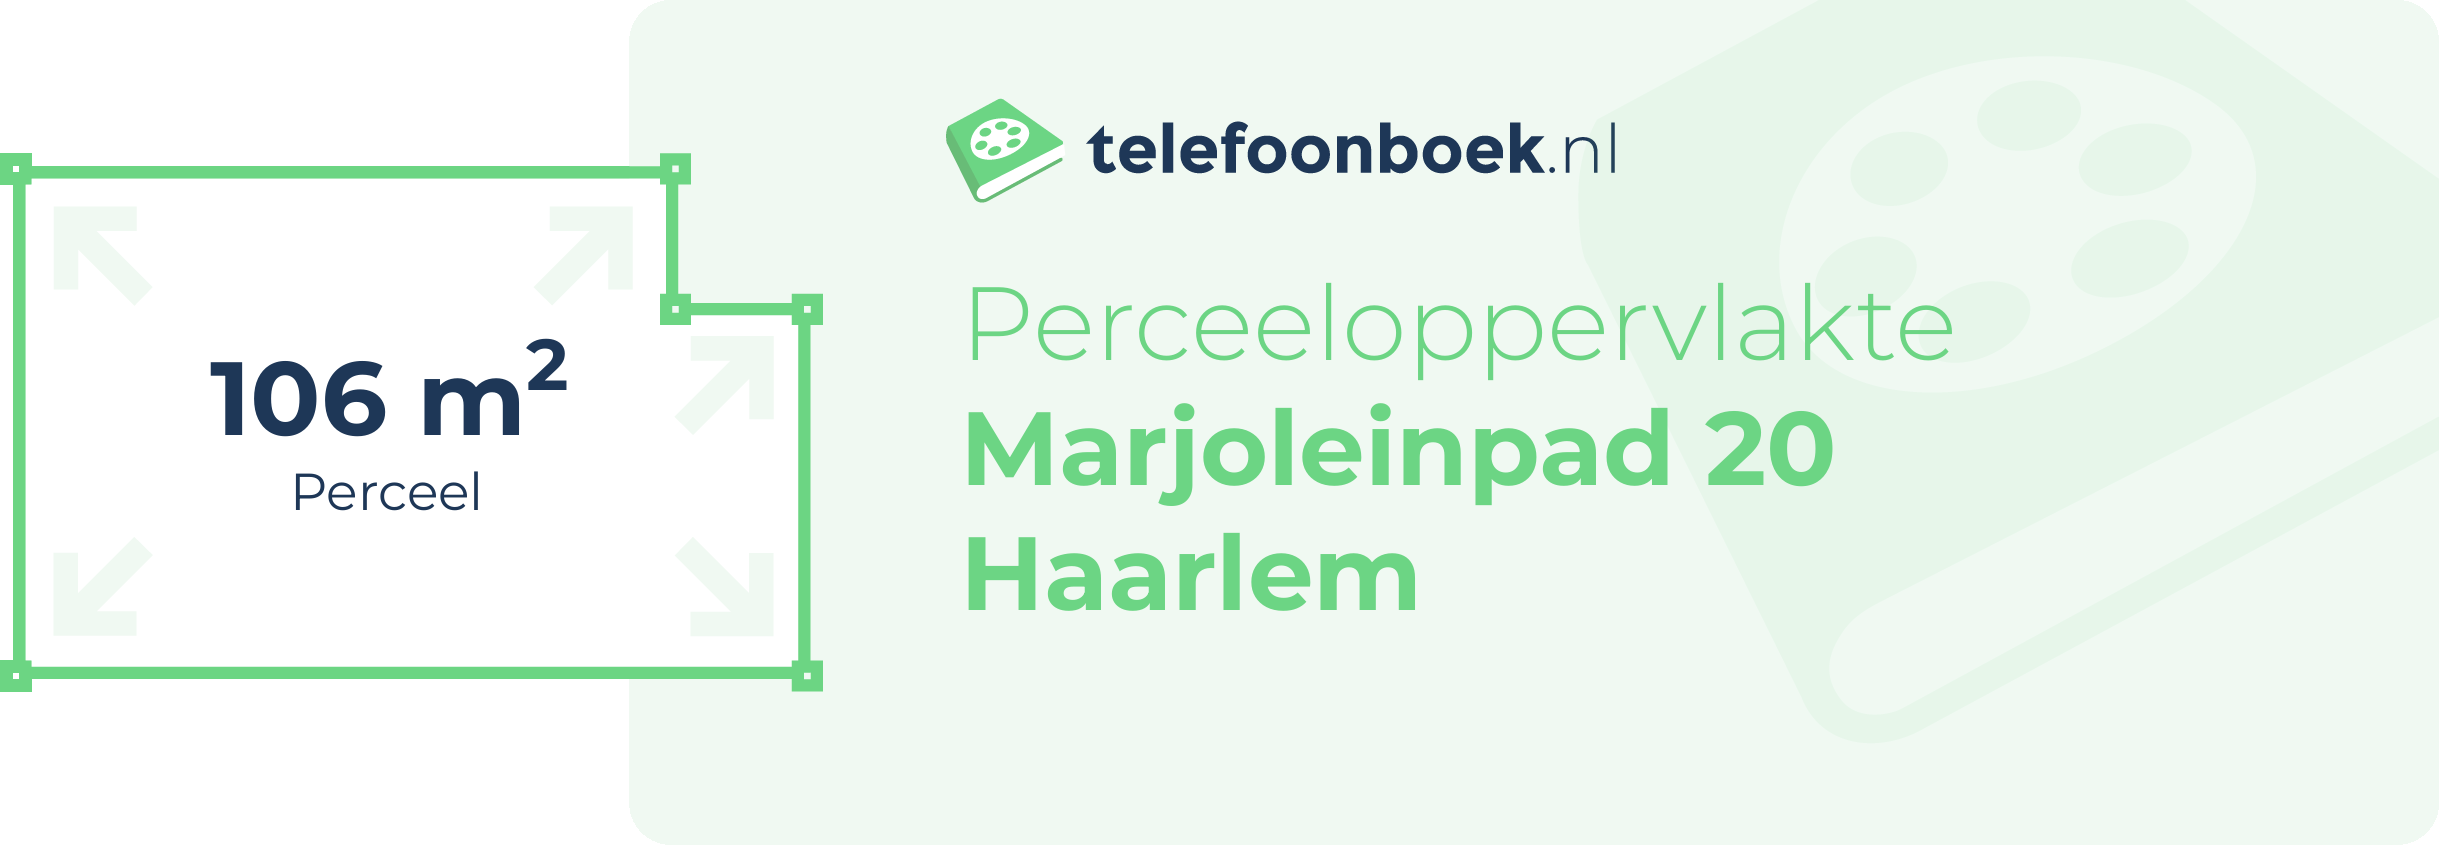 Perceeloppervlakte Marjoleinpad 20 Haarlem